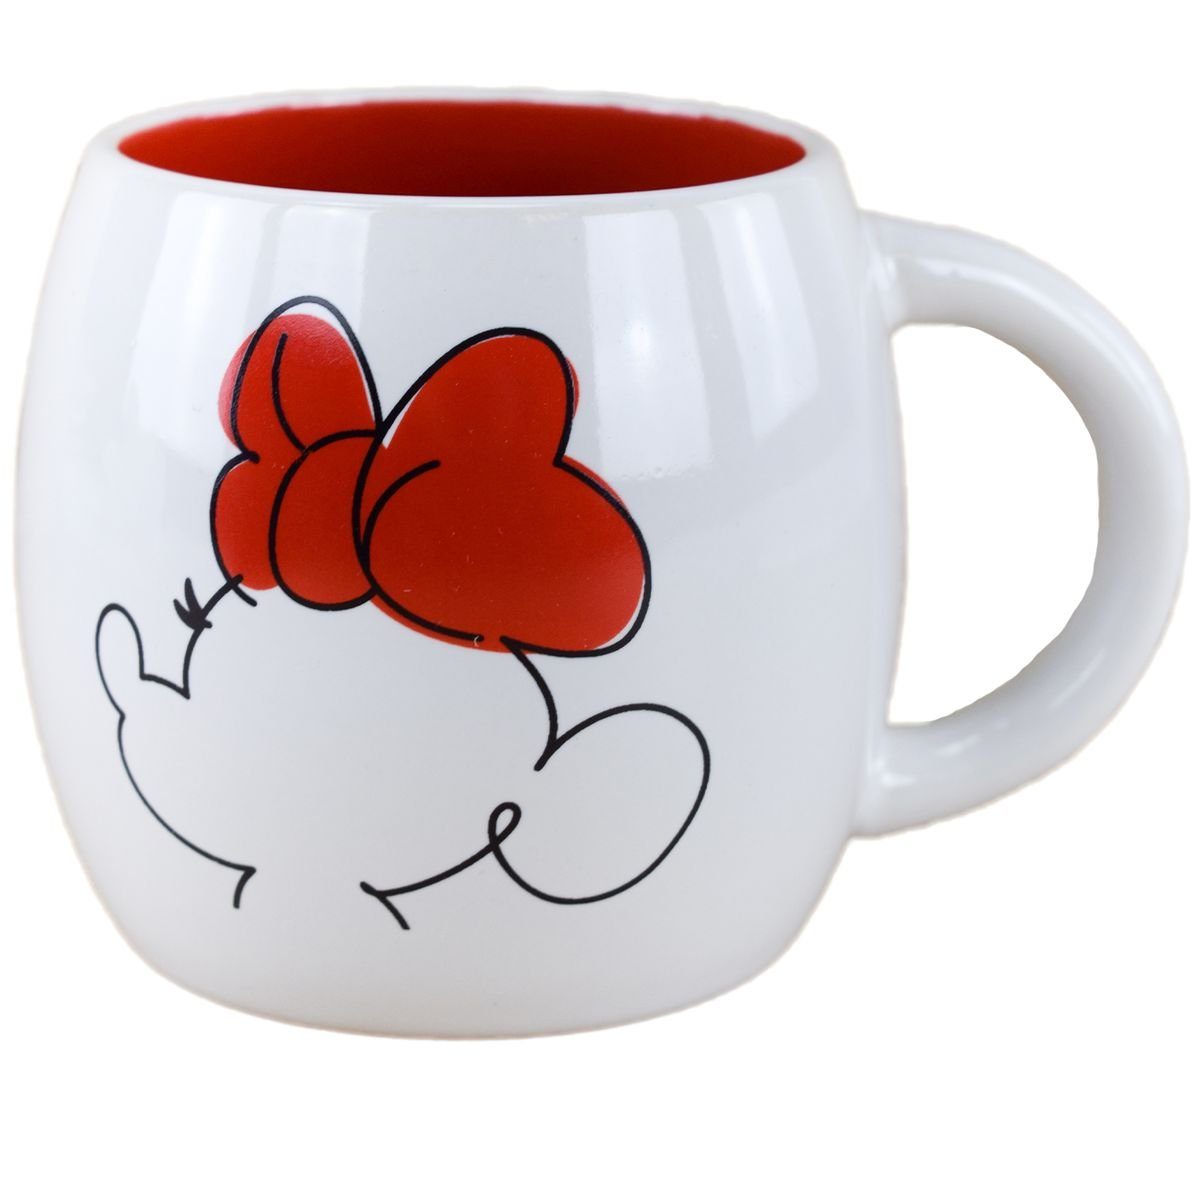 Stor Tasse Disney Minnie Mouse Tasse Schleife & Herz ca. 380 ml